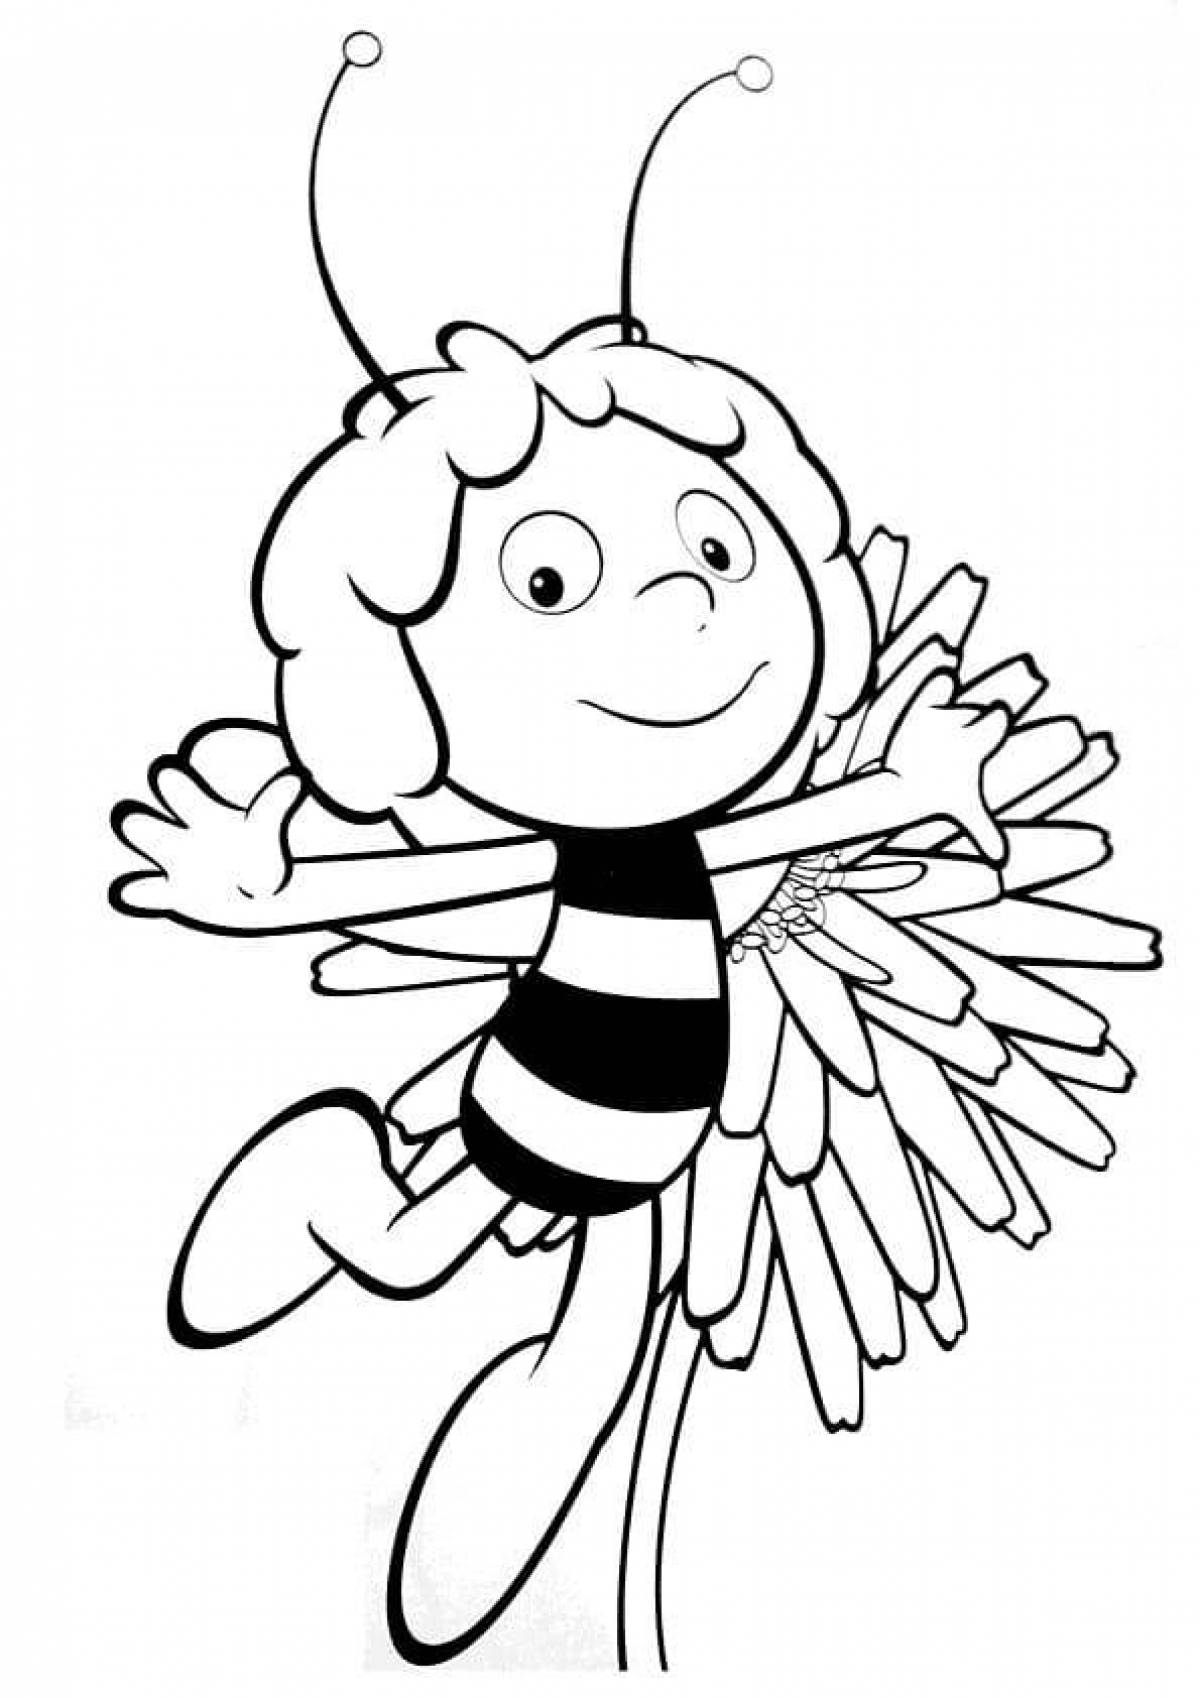 Пчелка раскраска распечатать. Пчелка Майя раскраска. Разукрашки Пчелка Майя. Картинки для раскрашивания Пчелка Майя. Пчела Майя раскраска для детей.